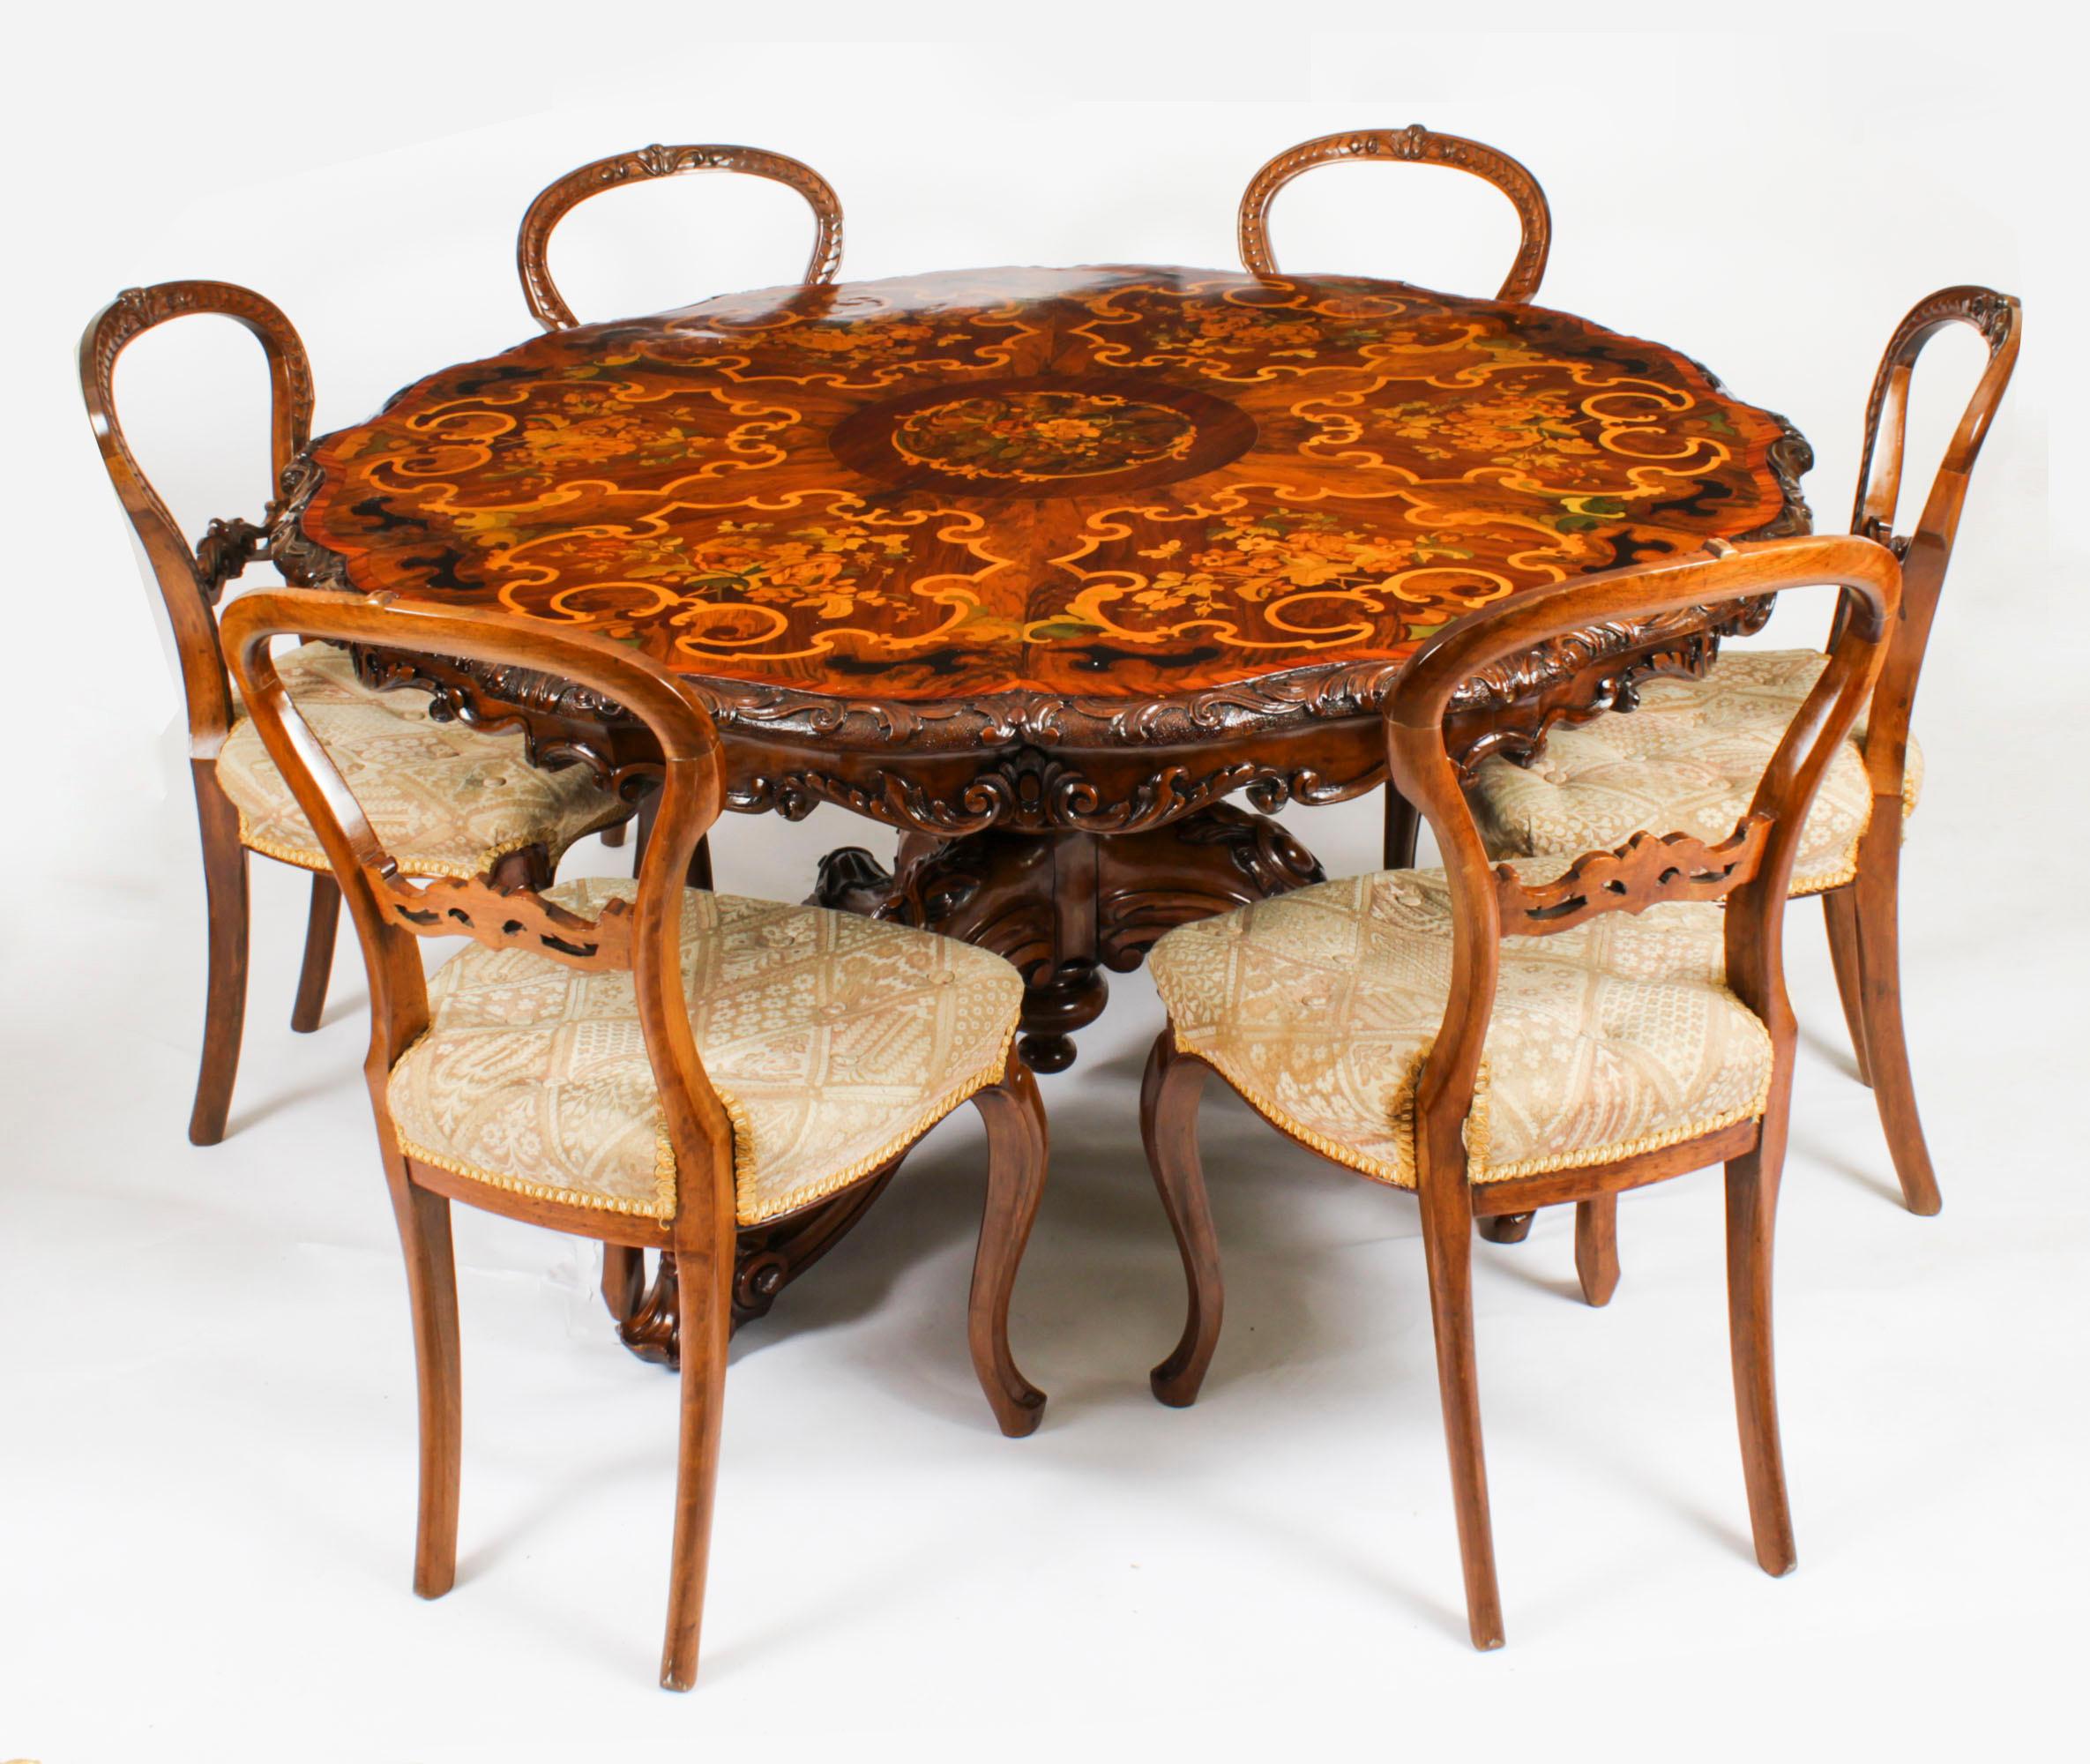 Il s'agit d'une belle et rare table centrale en ronce de noyer, bois de tulipe, ébénisterie et marqueterie de bois fruitier, de style anglais moyennement victorien, à la manière d'Edward Holmes Baldock et datant d'environ 1860.

Le plateau